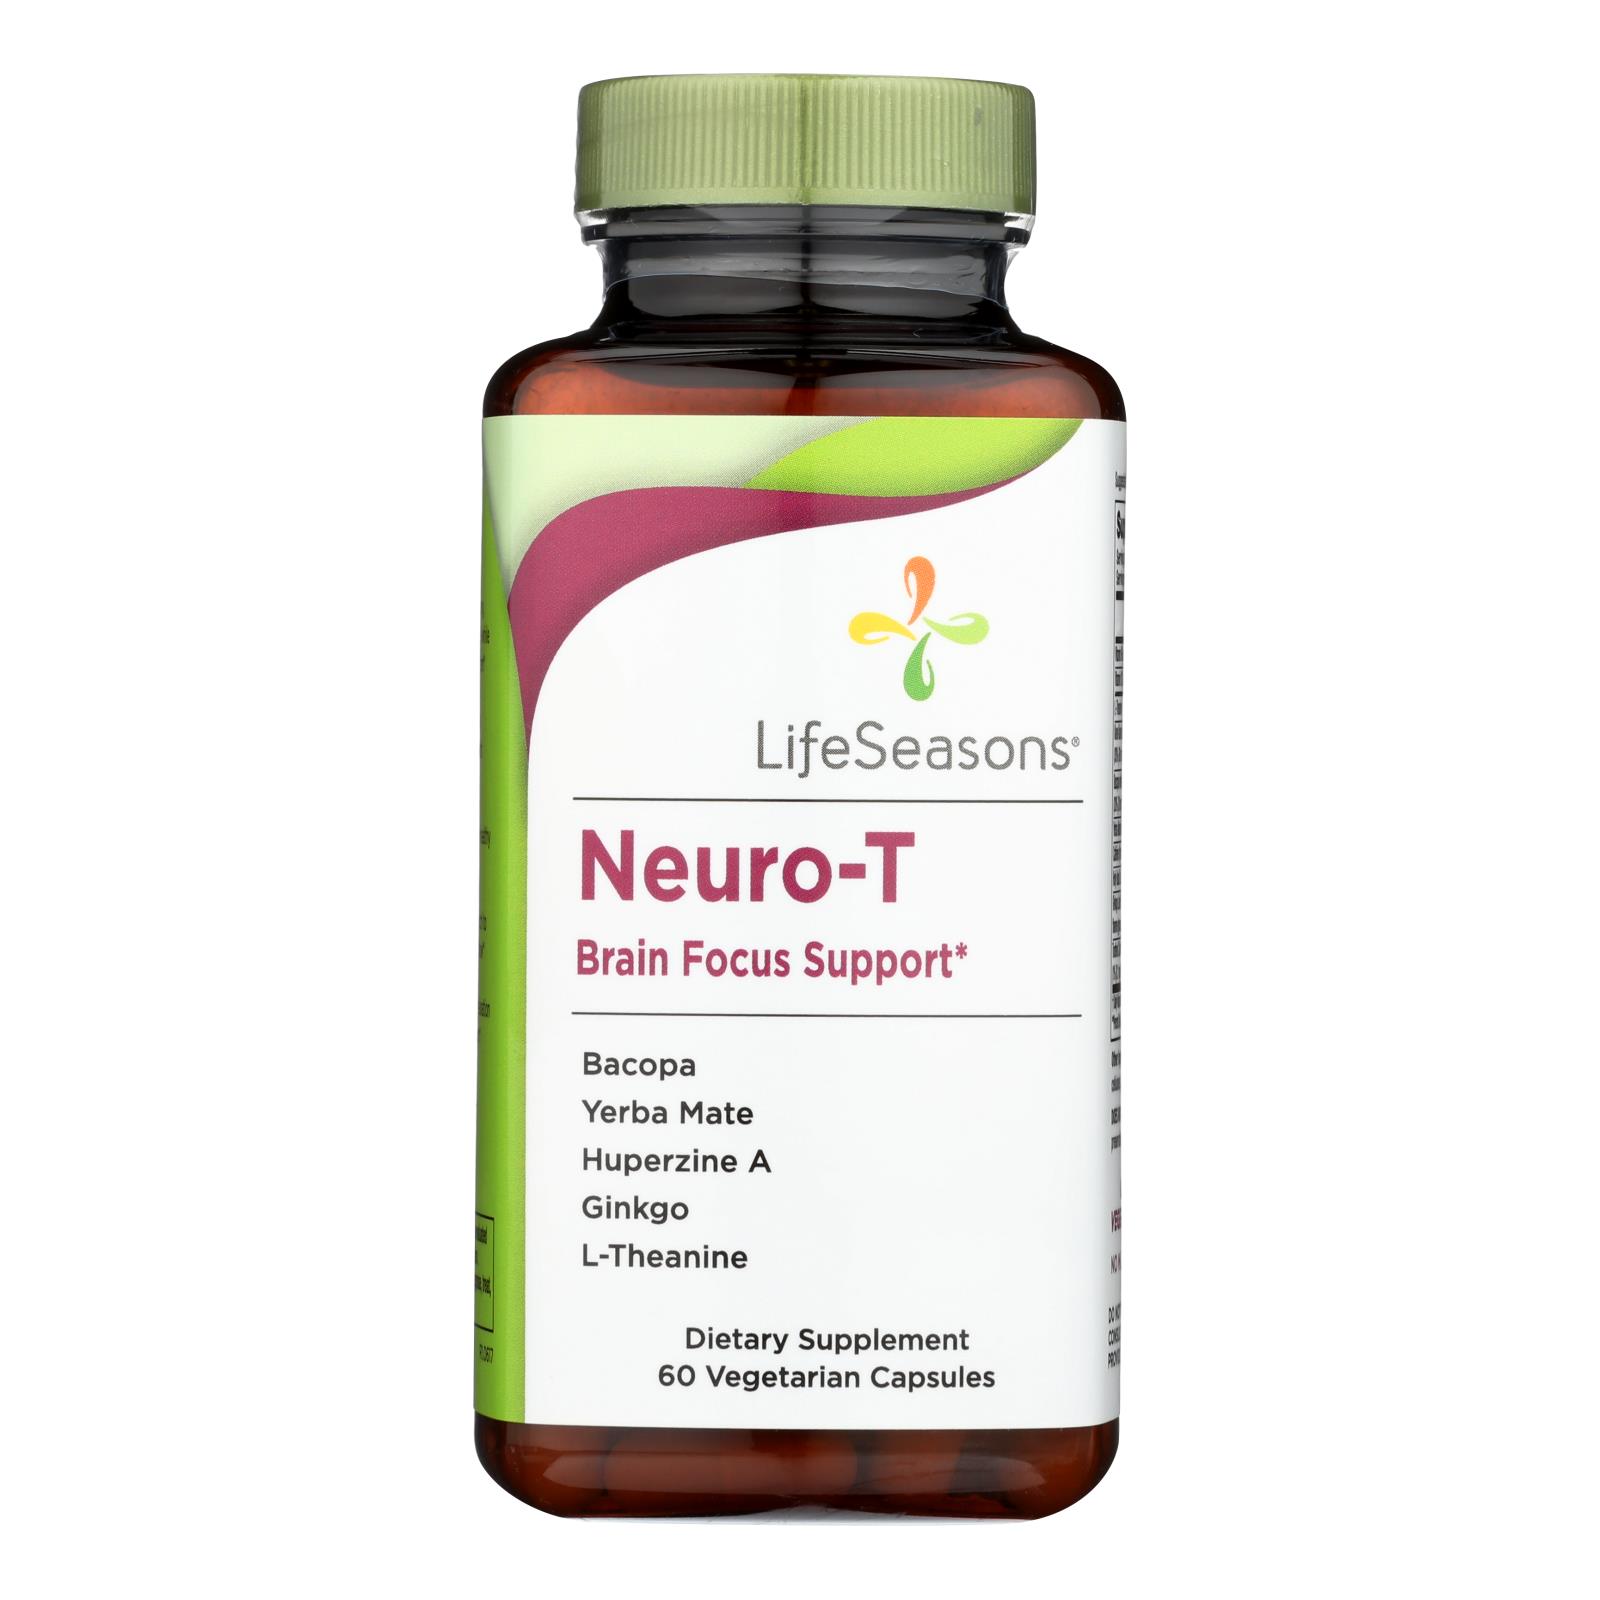 Lifeseasons Neuro-T Brain Focus Support - 1 Each - 60 CT